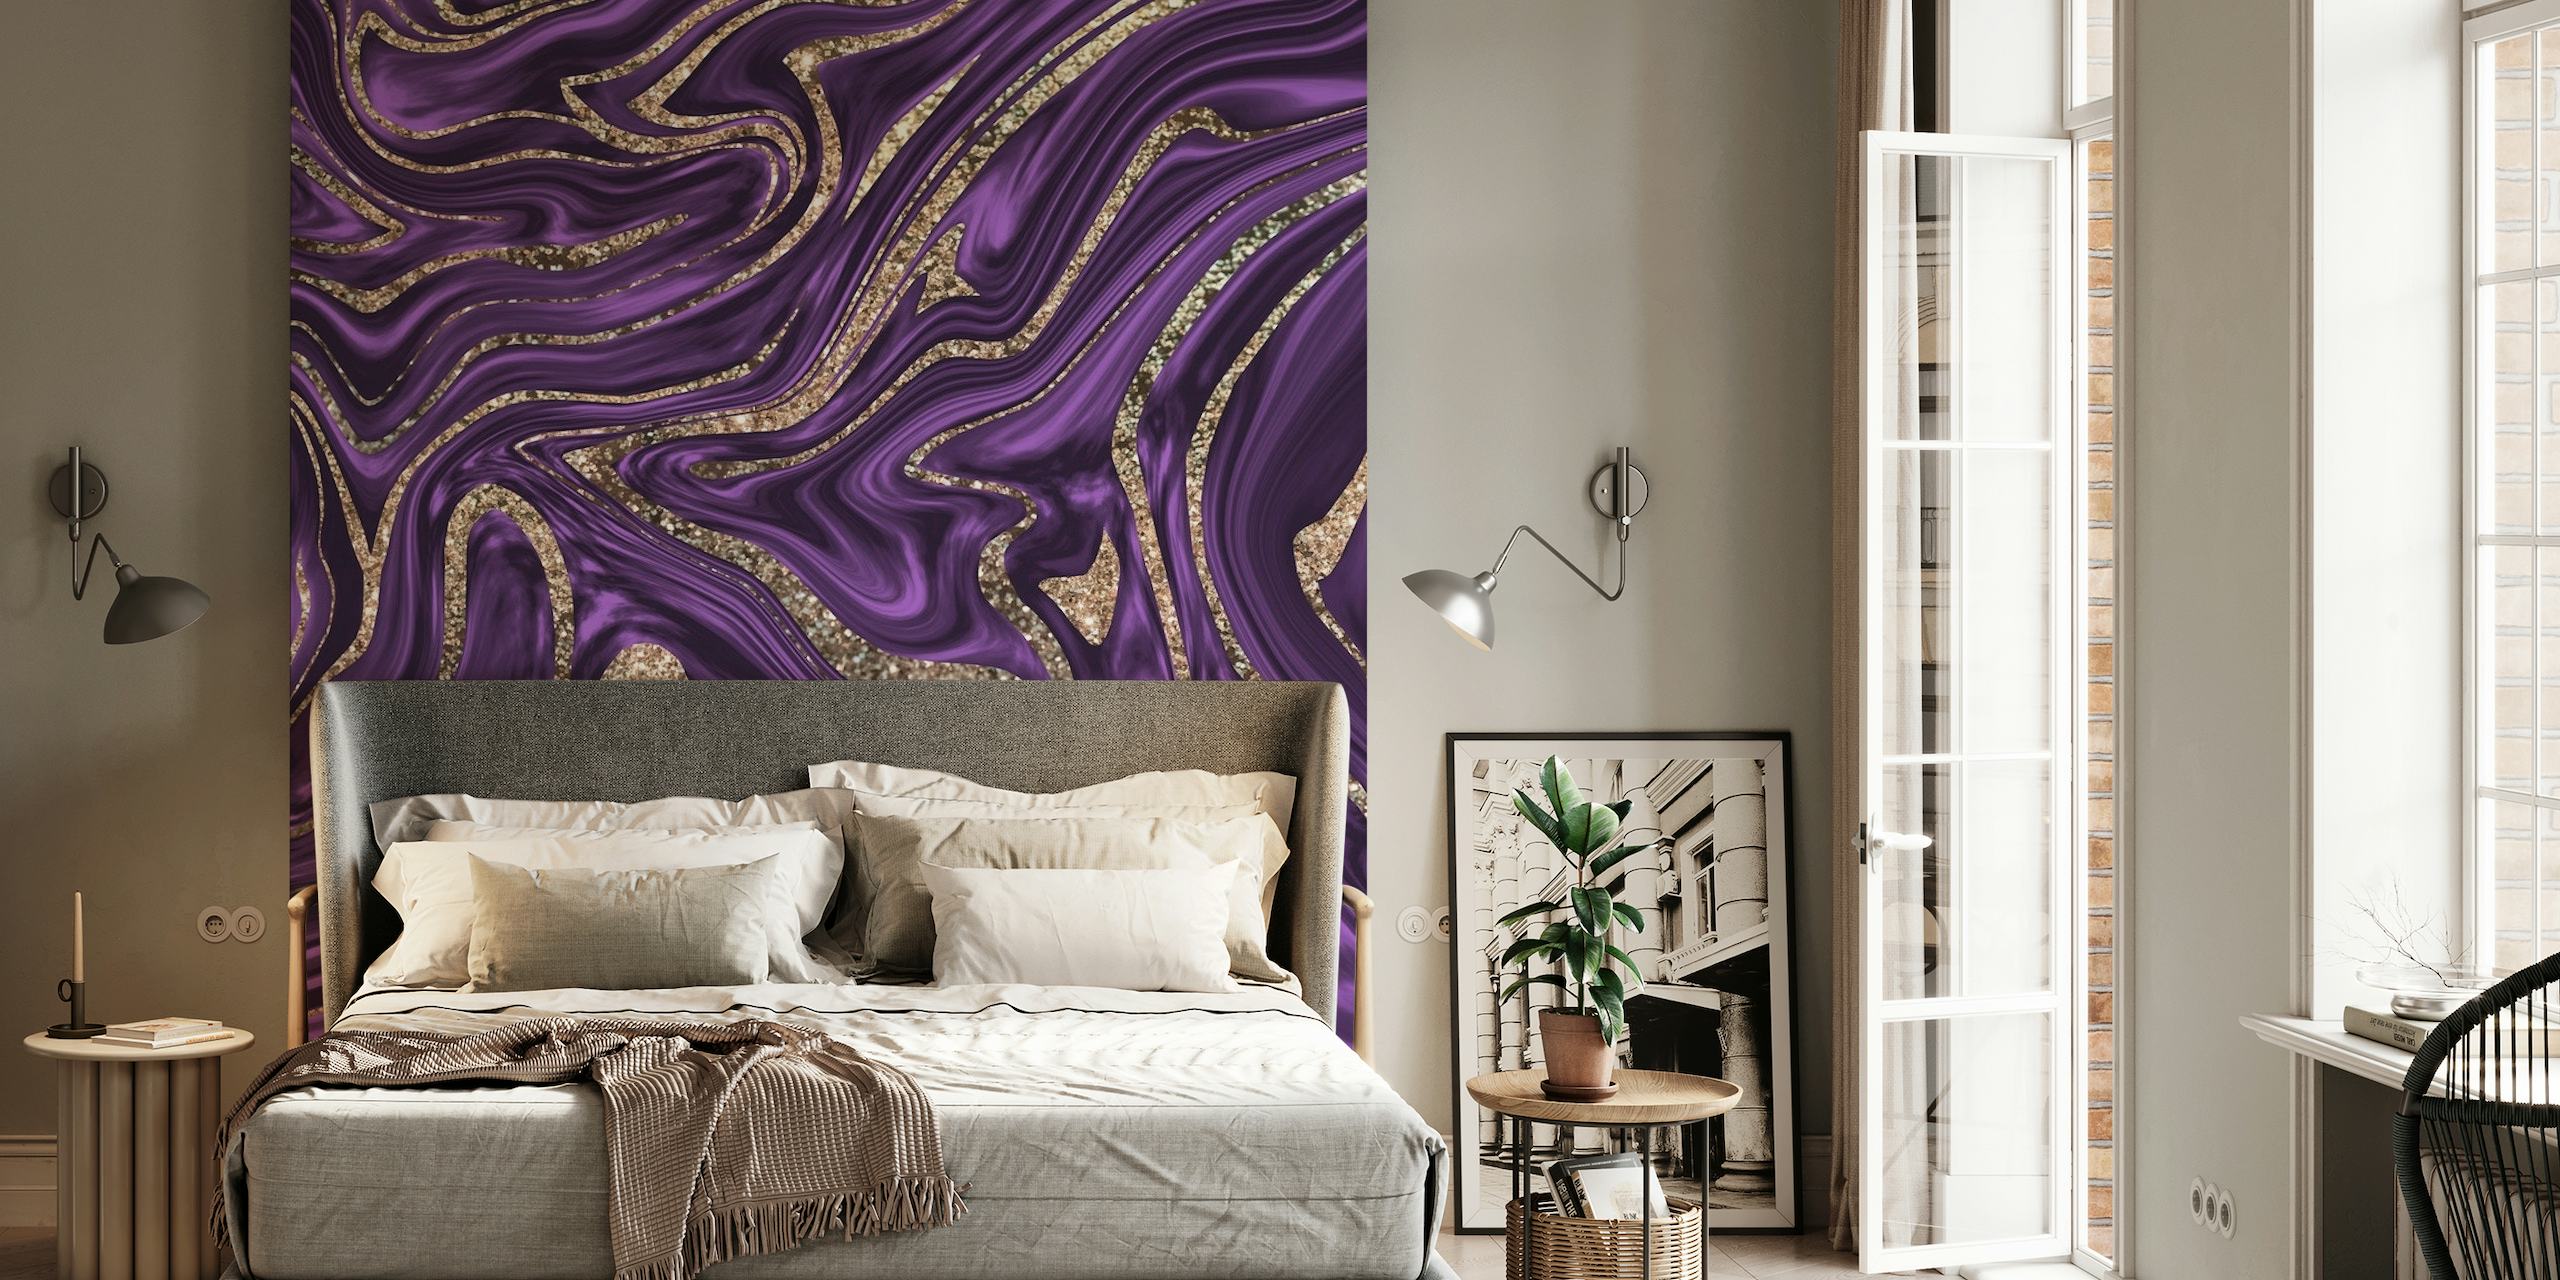 Elegante decorazione murale con motivo a spirale glitter viola, nero e oro